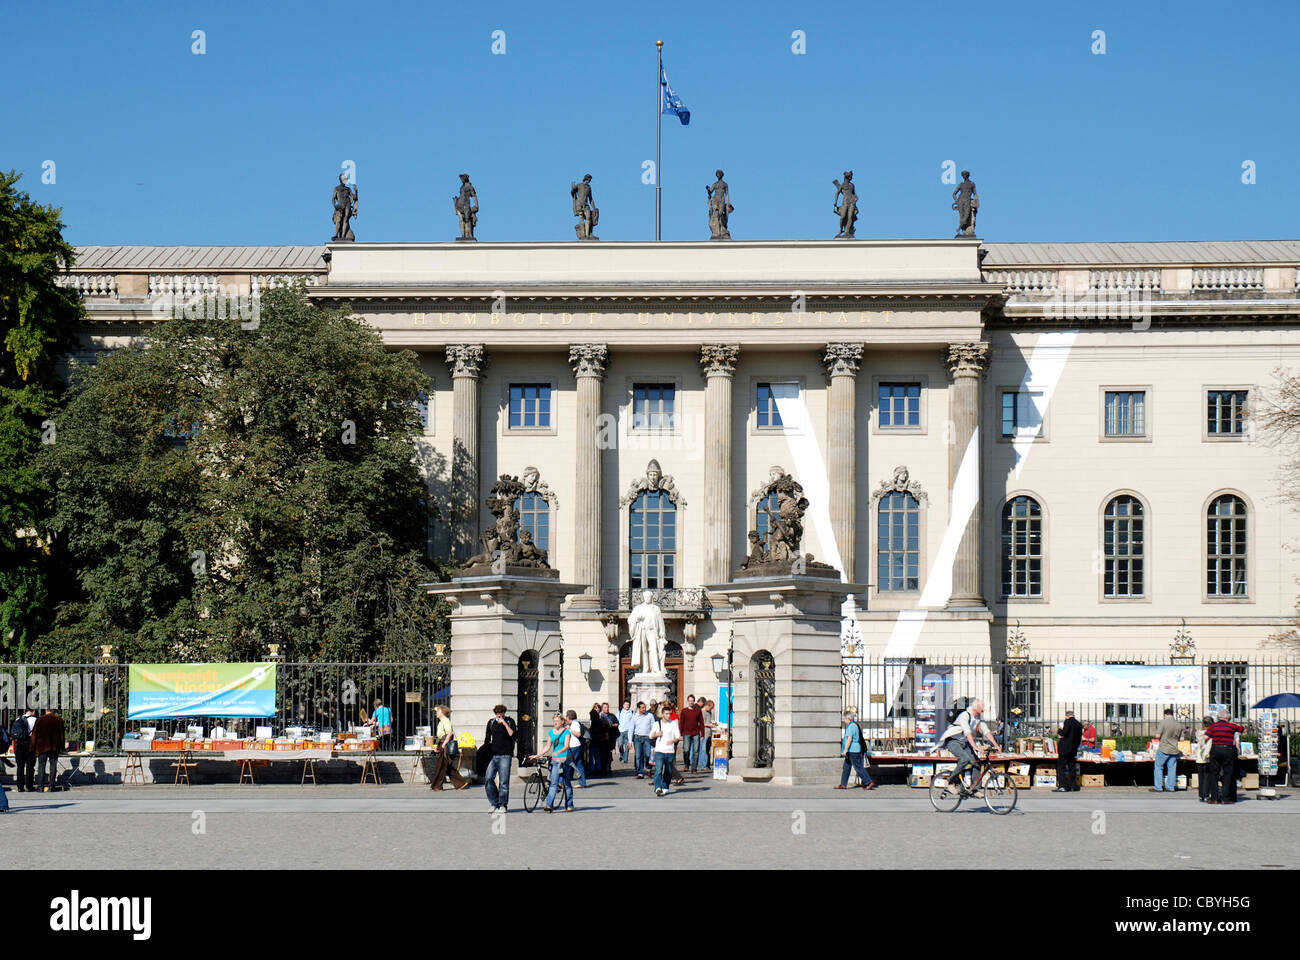 Humboldt university at the boulevard Unter den Linden in Berlin. Stock Photo